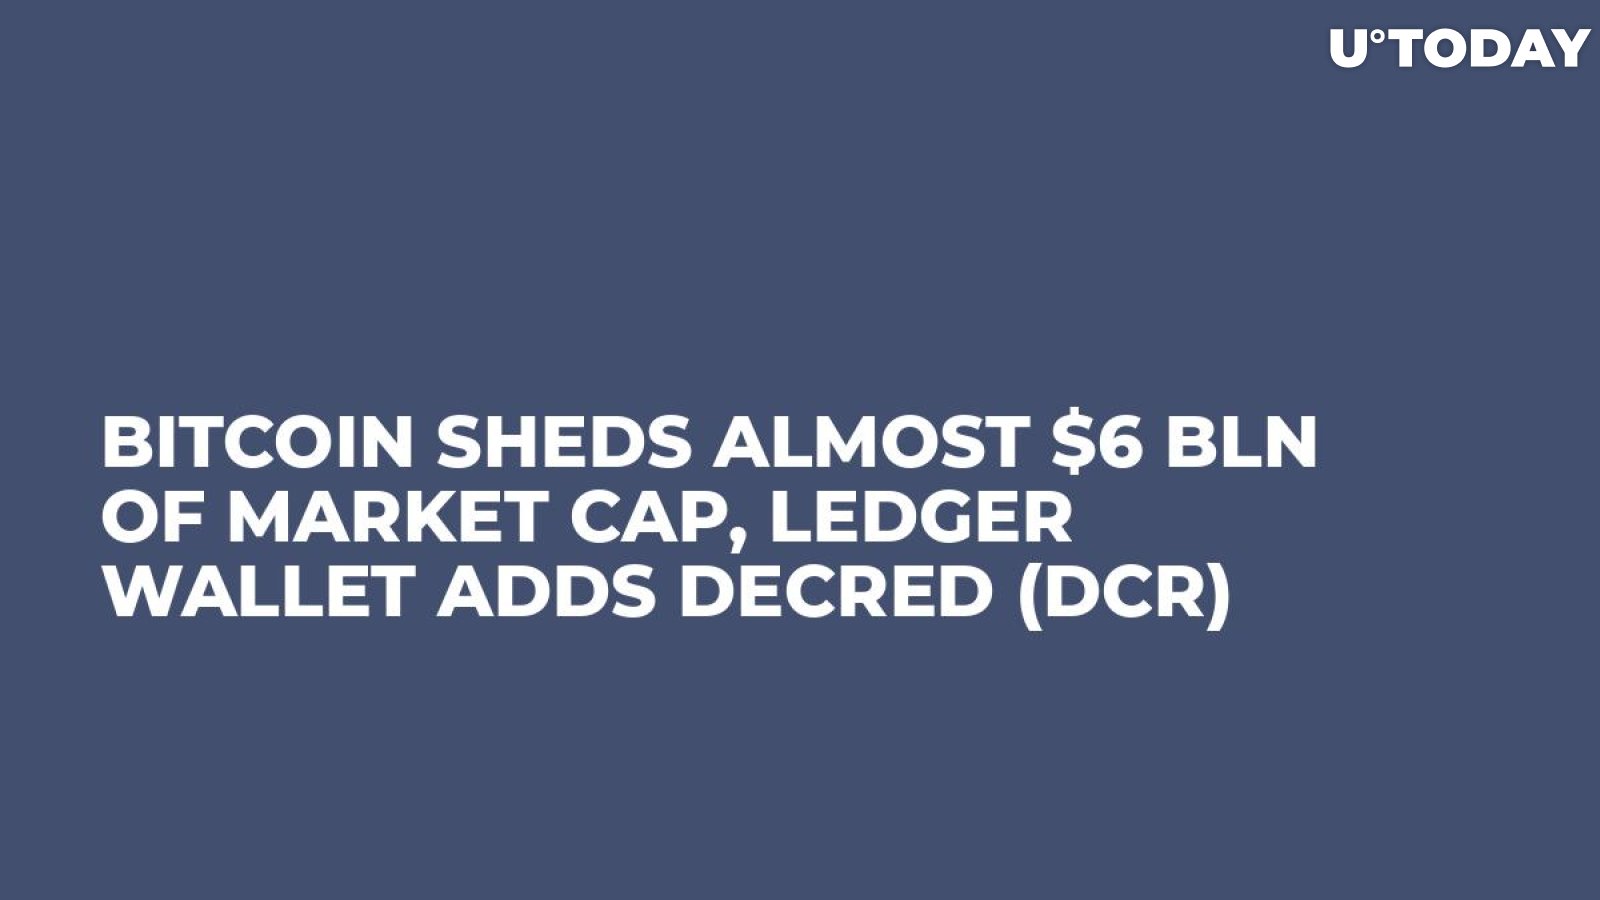 Bitcoin Sheds Almost $6 bln of Market Cap, Ledger Wallet Adds Decred (DCR)